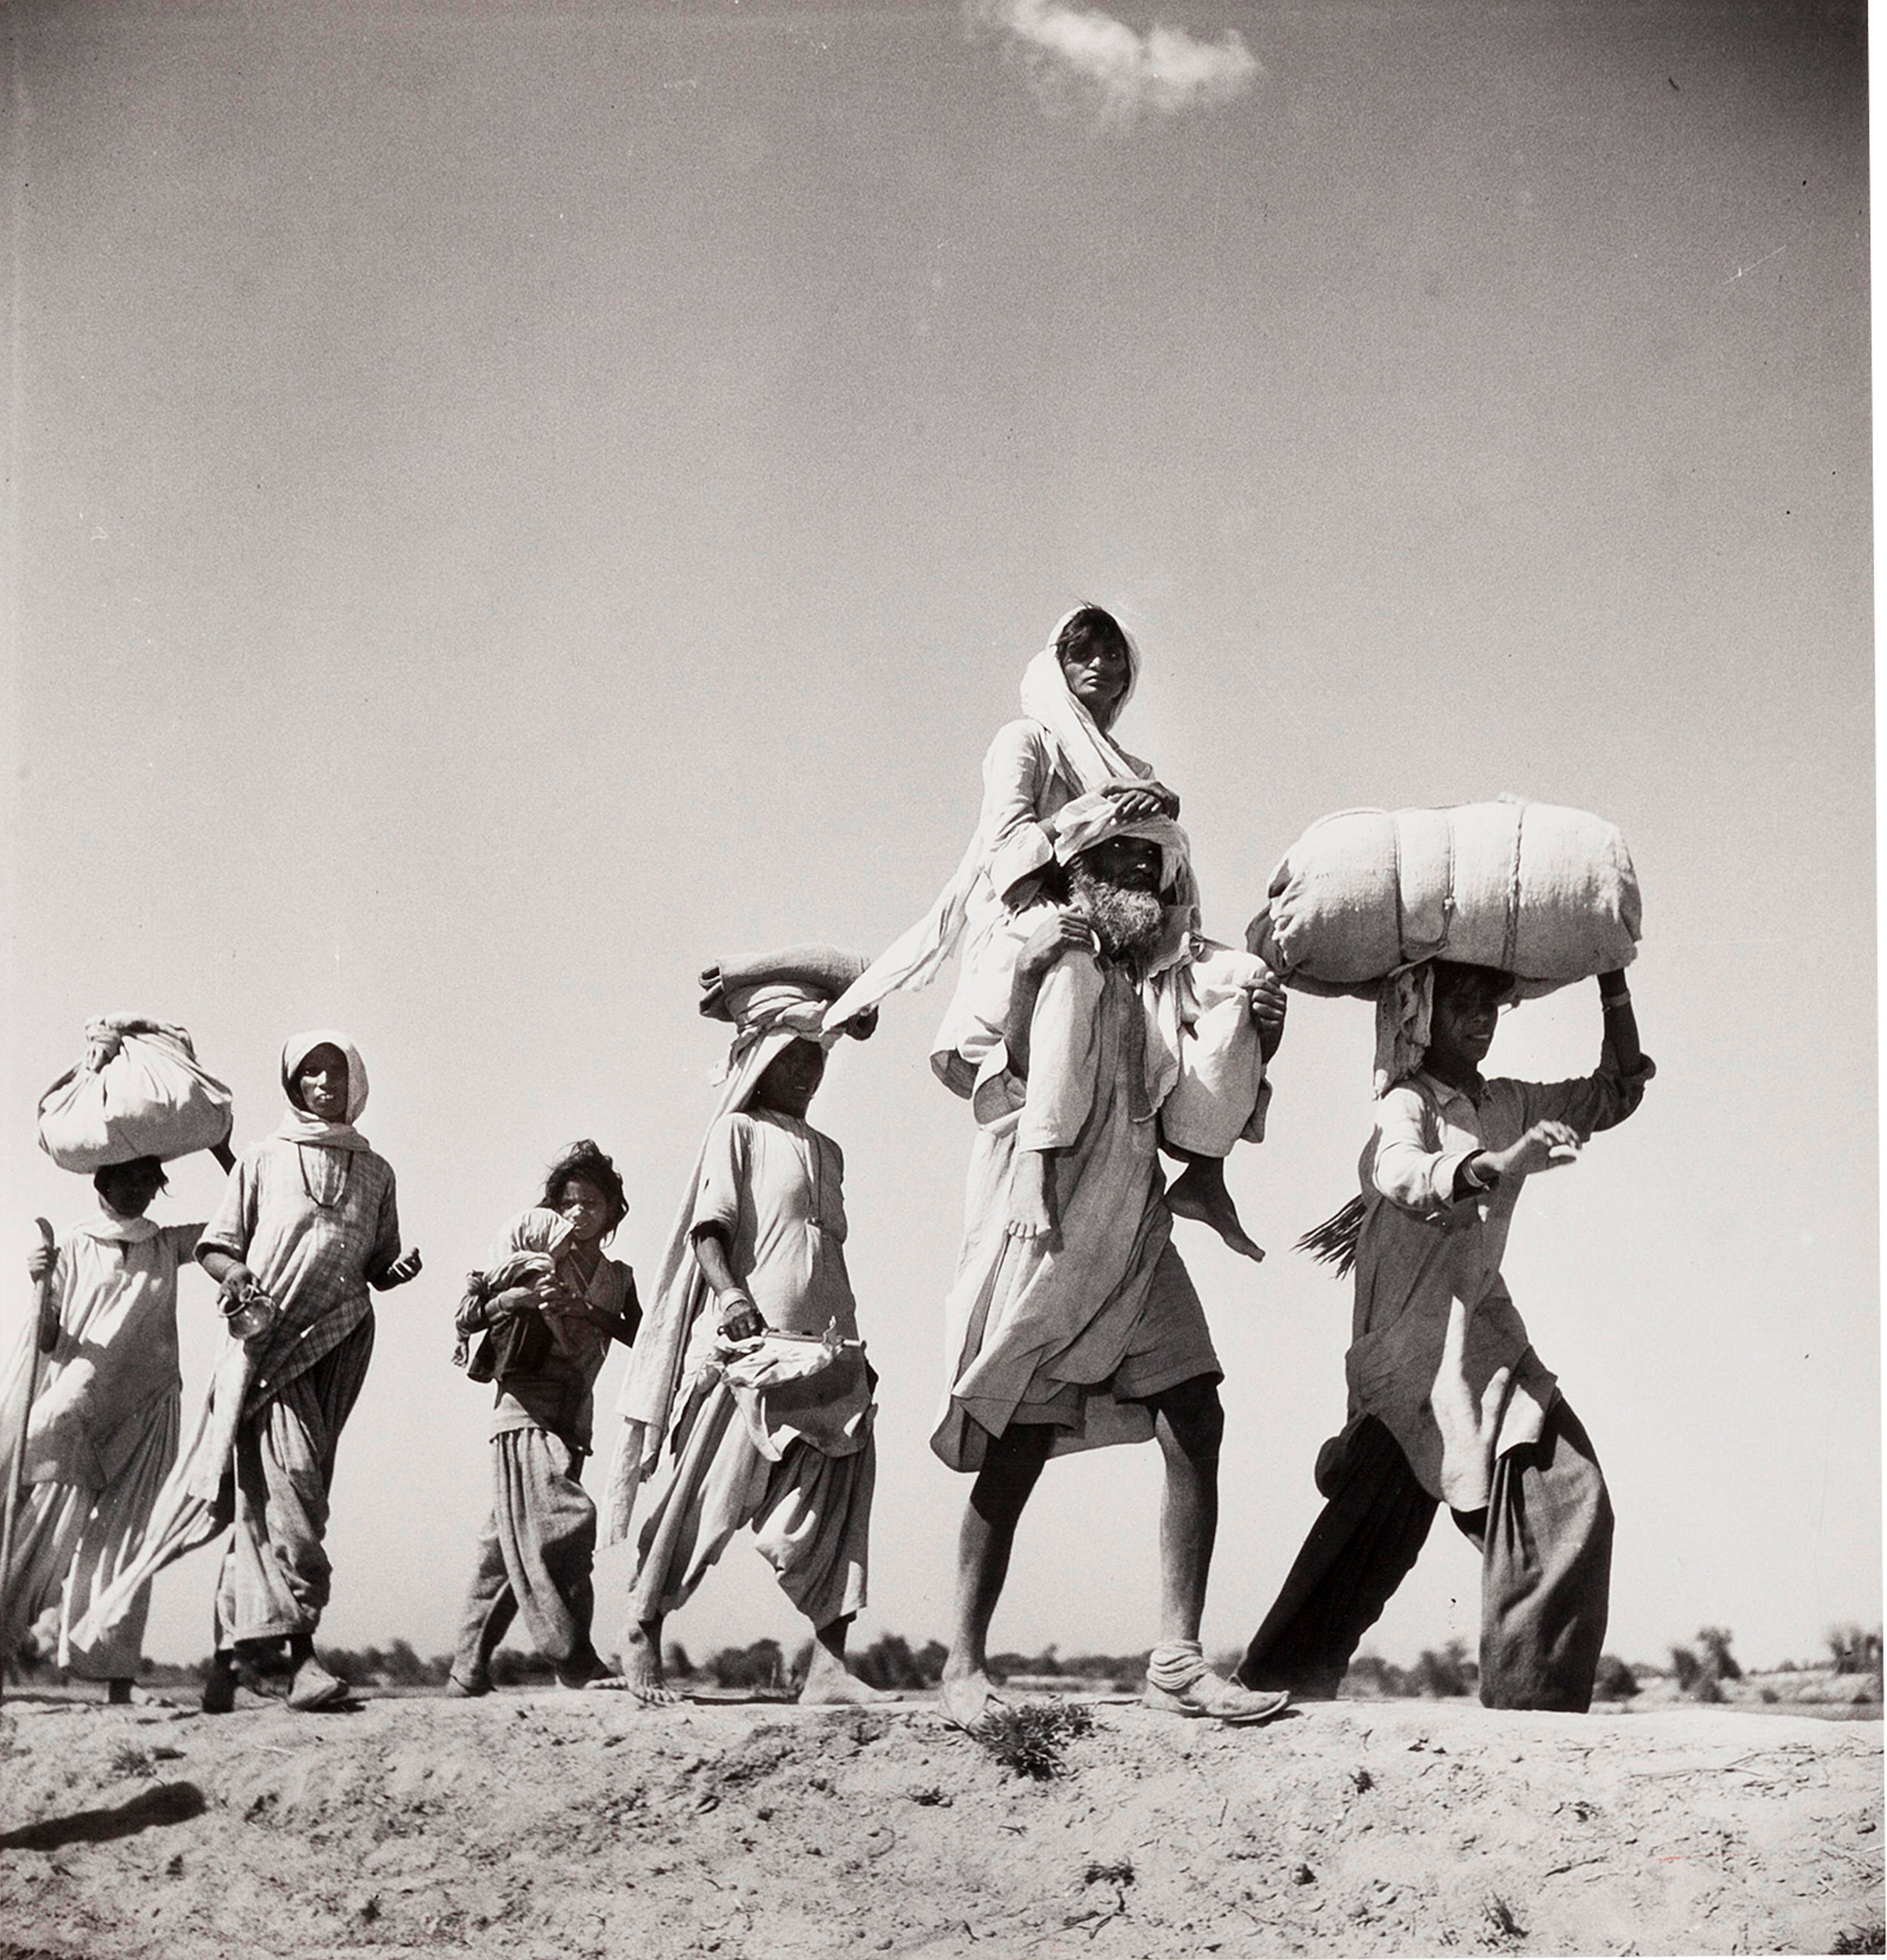 Великое переселение народов, Пакистан, 1947 год.  Фотограф Маргарет Бурк-Уайт